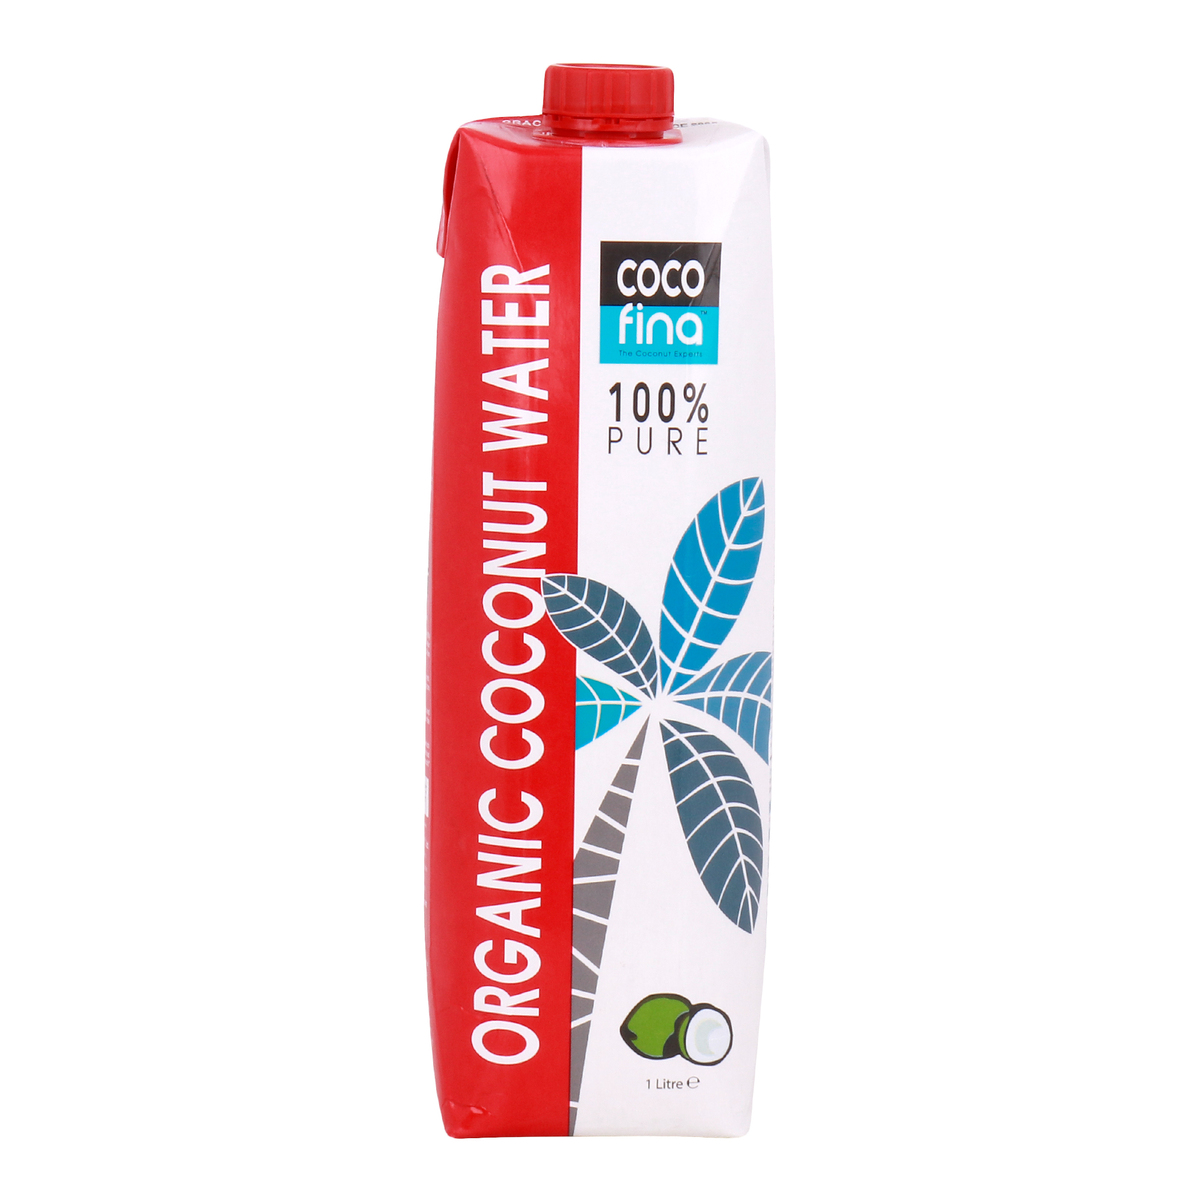 Coco Fina Organic Coconut Water 1 Litre